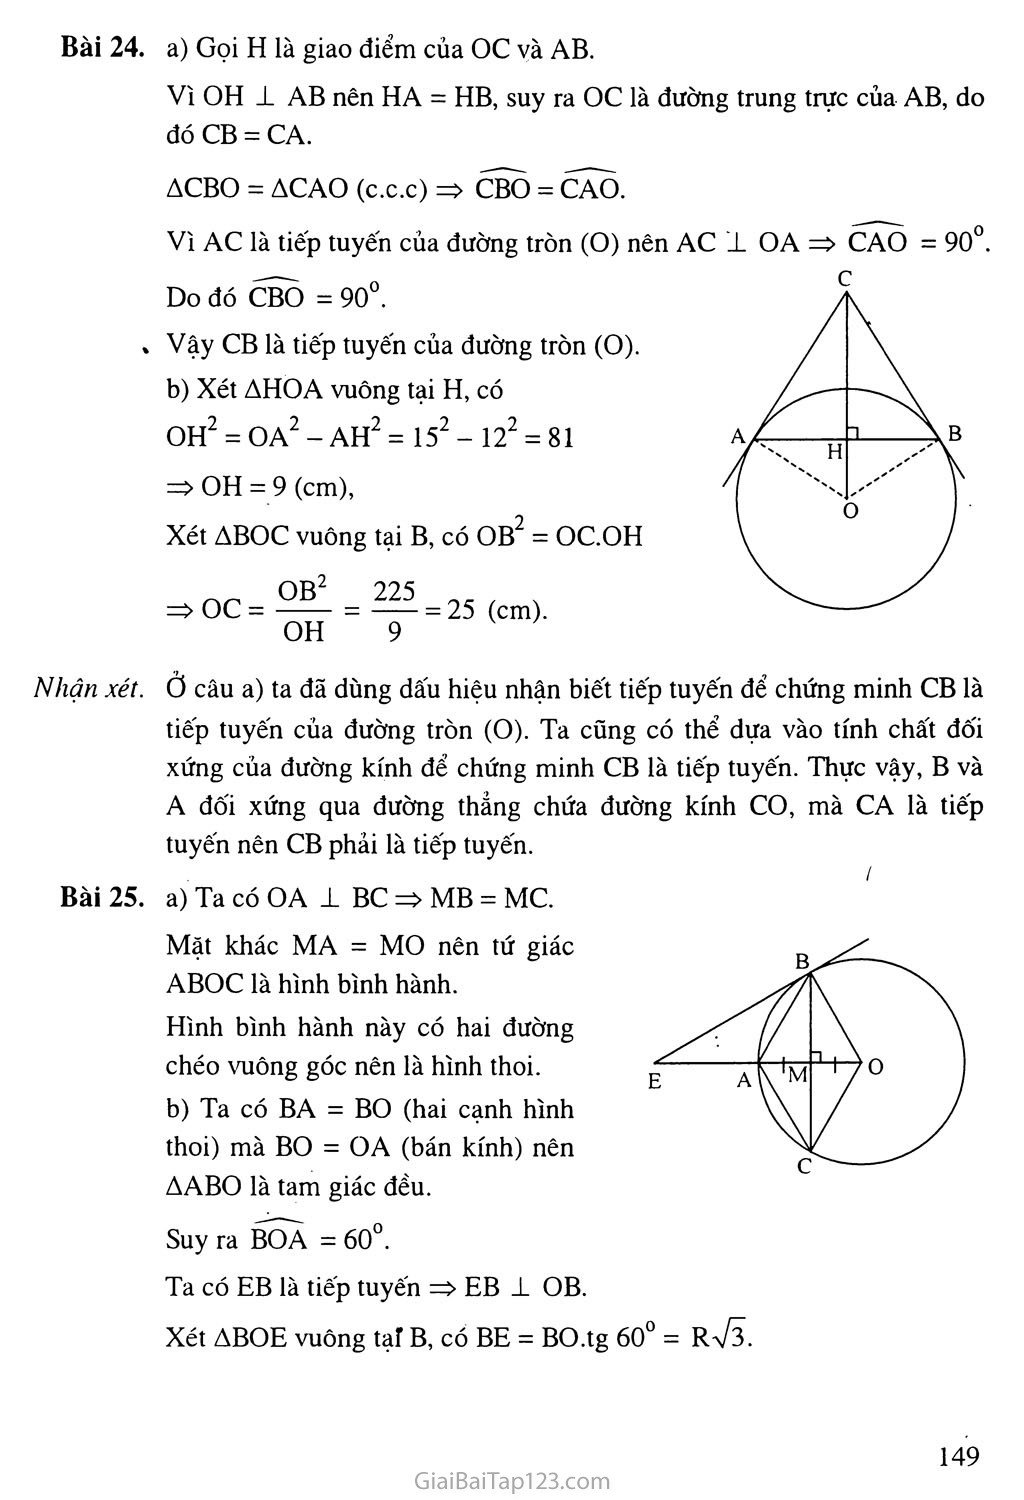 Bài 4. Vi trí tương đối của đường thẳng và đường tròn + 
Bài 5. Dấu hiệu nhận biết tiếp tuyến của đường tròn trang 4